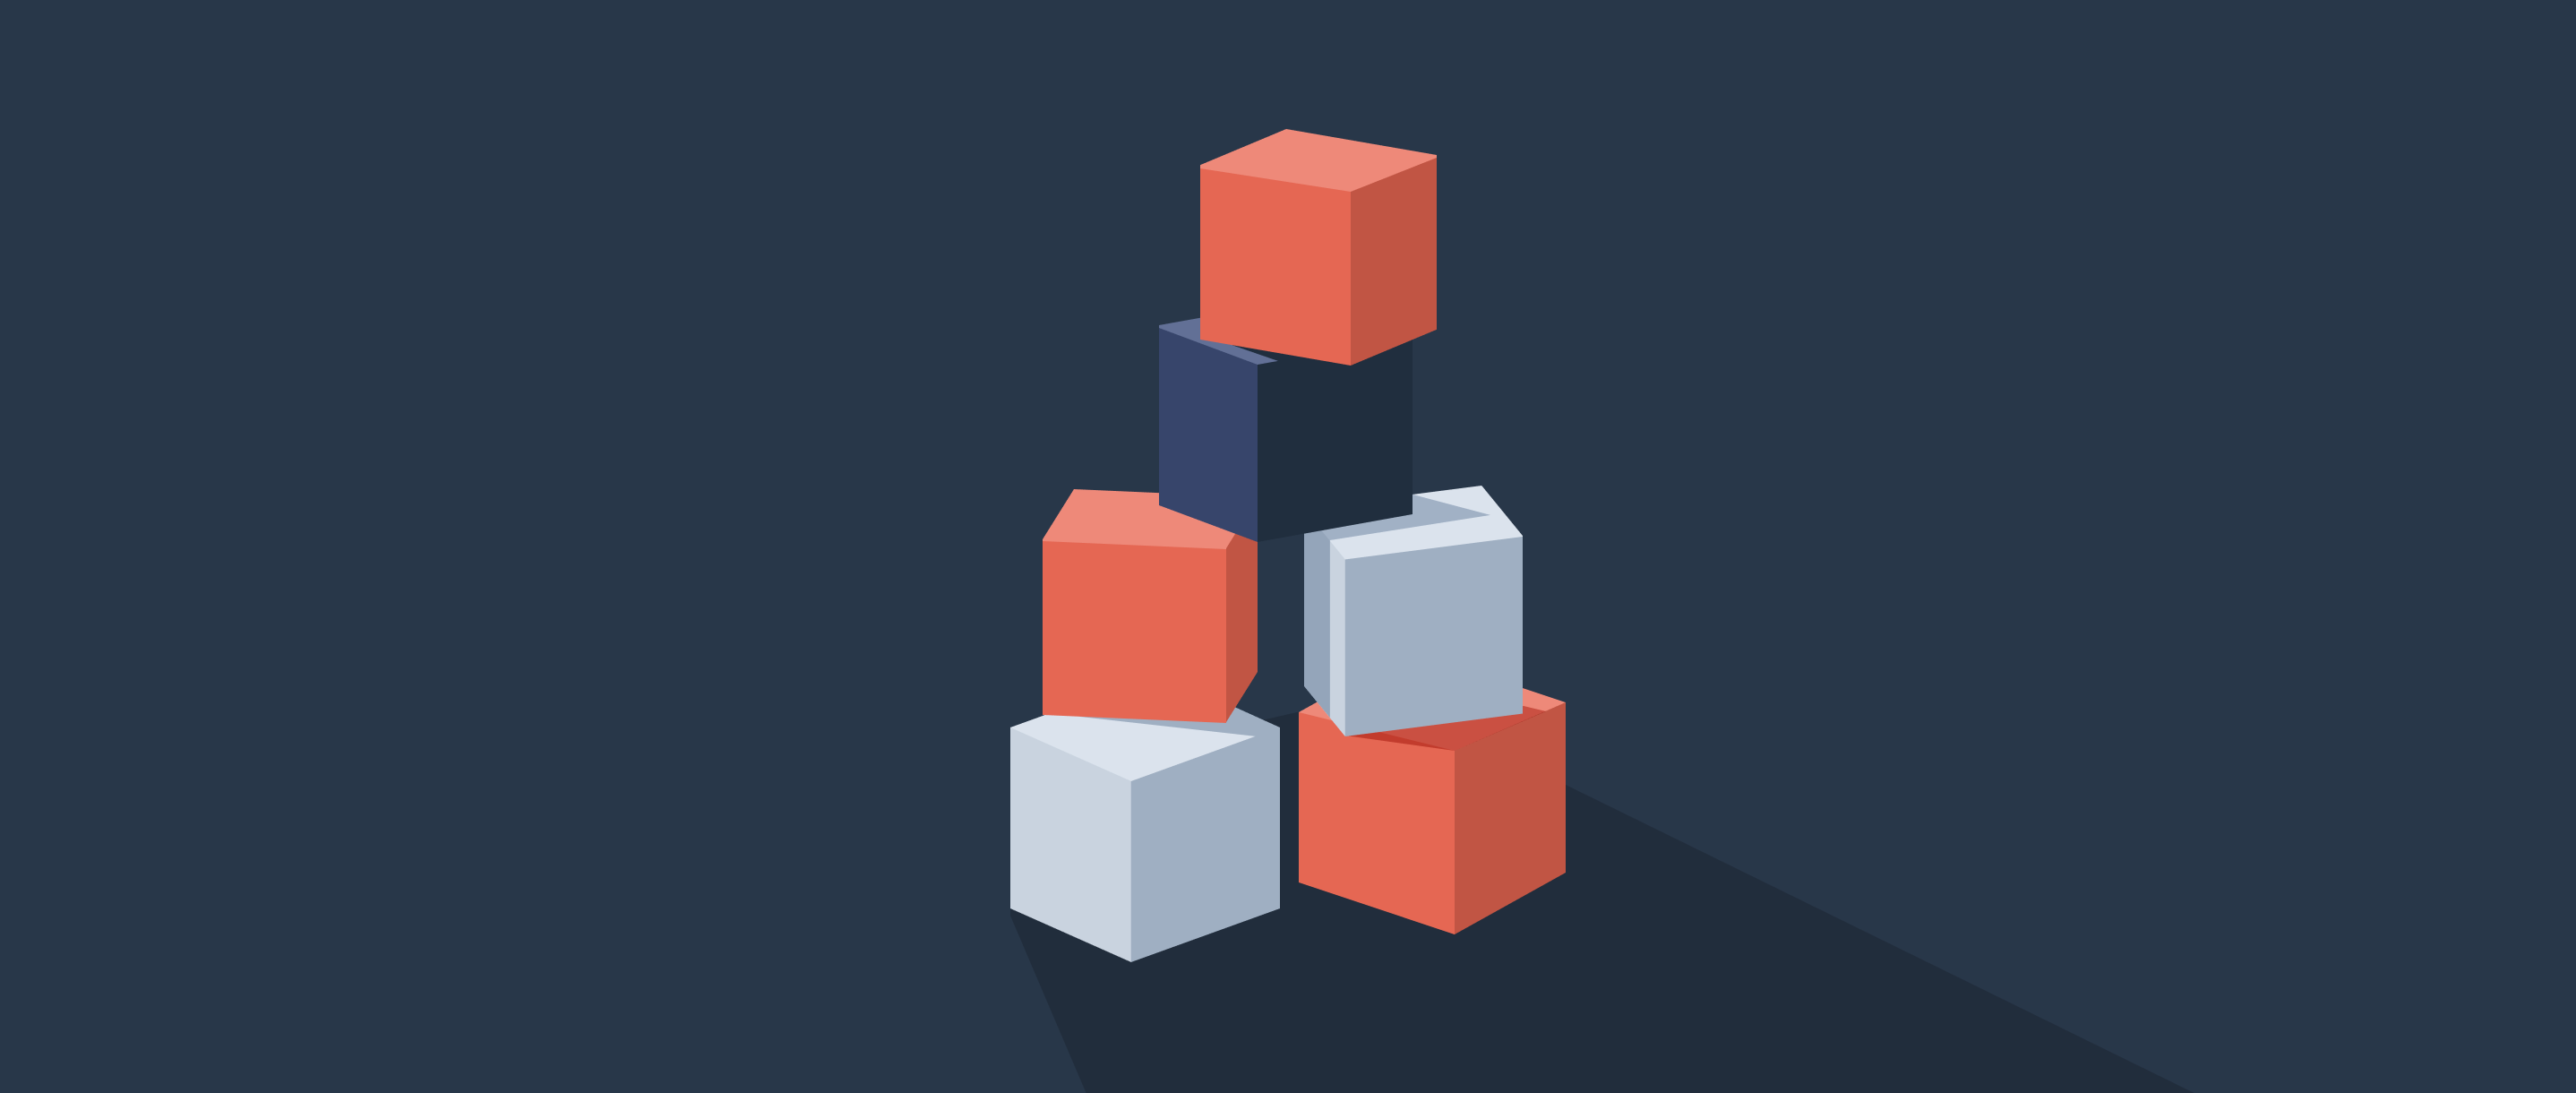 Building blocks graphic